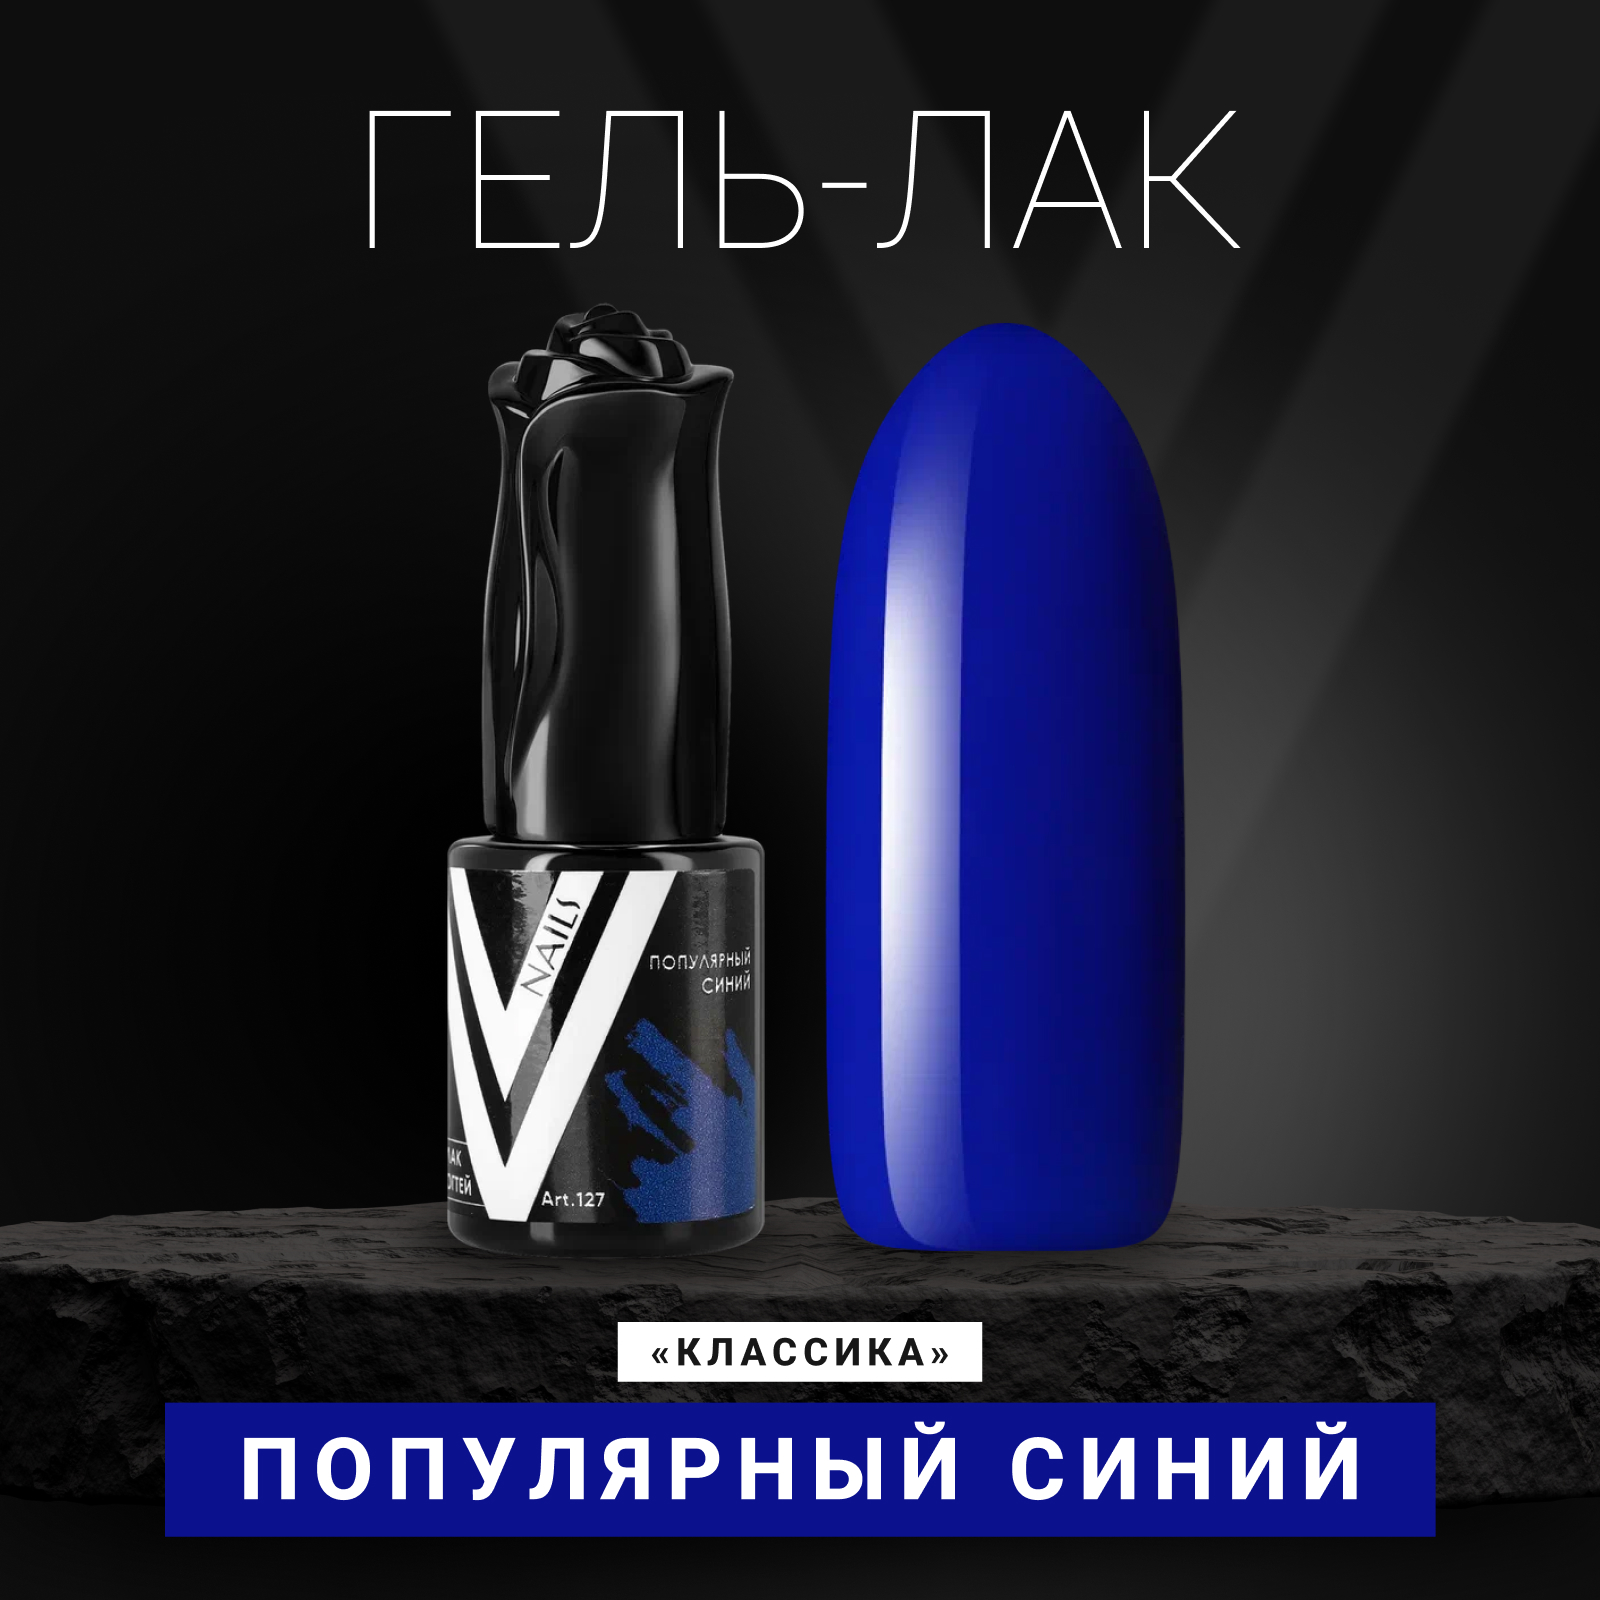 Гель-лак для ногтей Vogue Nails Популярный синий плотный яркий, ультрамарин, 10 мл